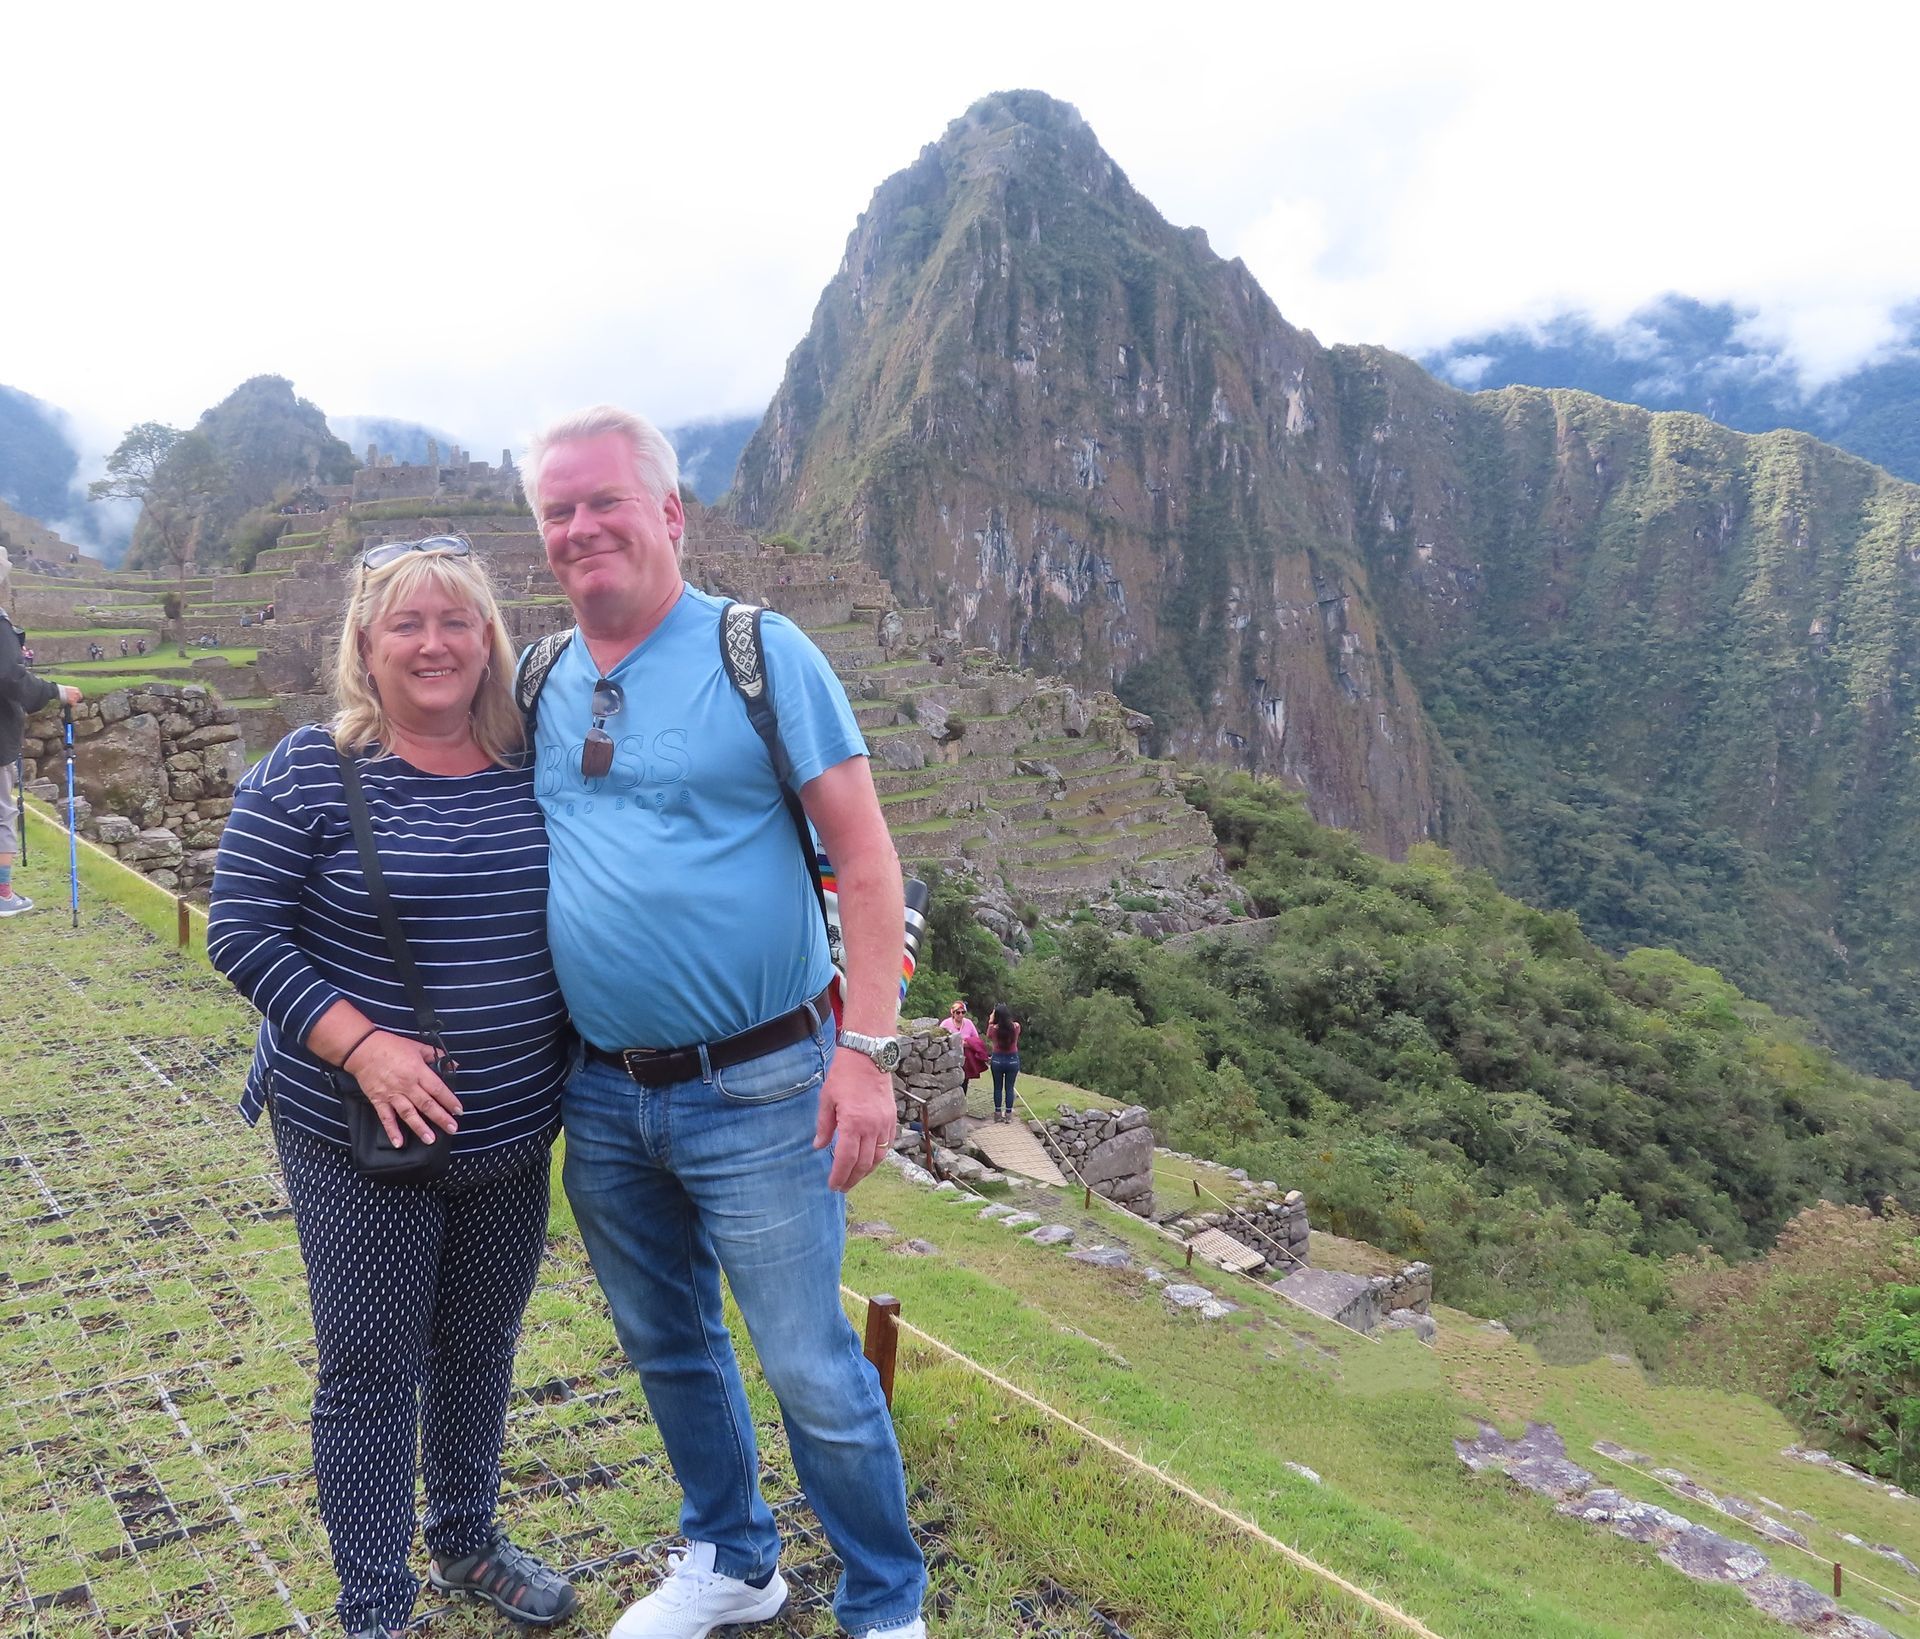 Rachel and Bill at Machu Pichu, Peru pre-cruise land tour